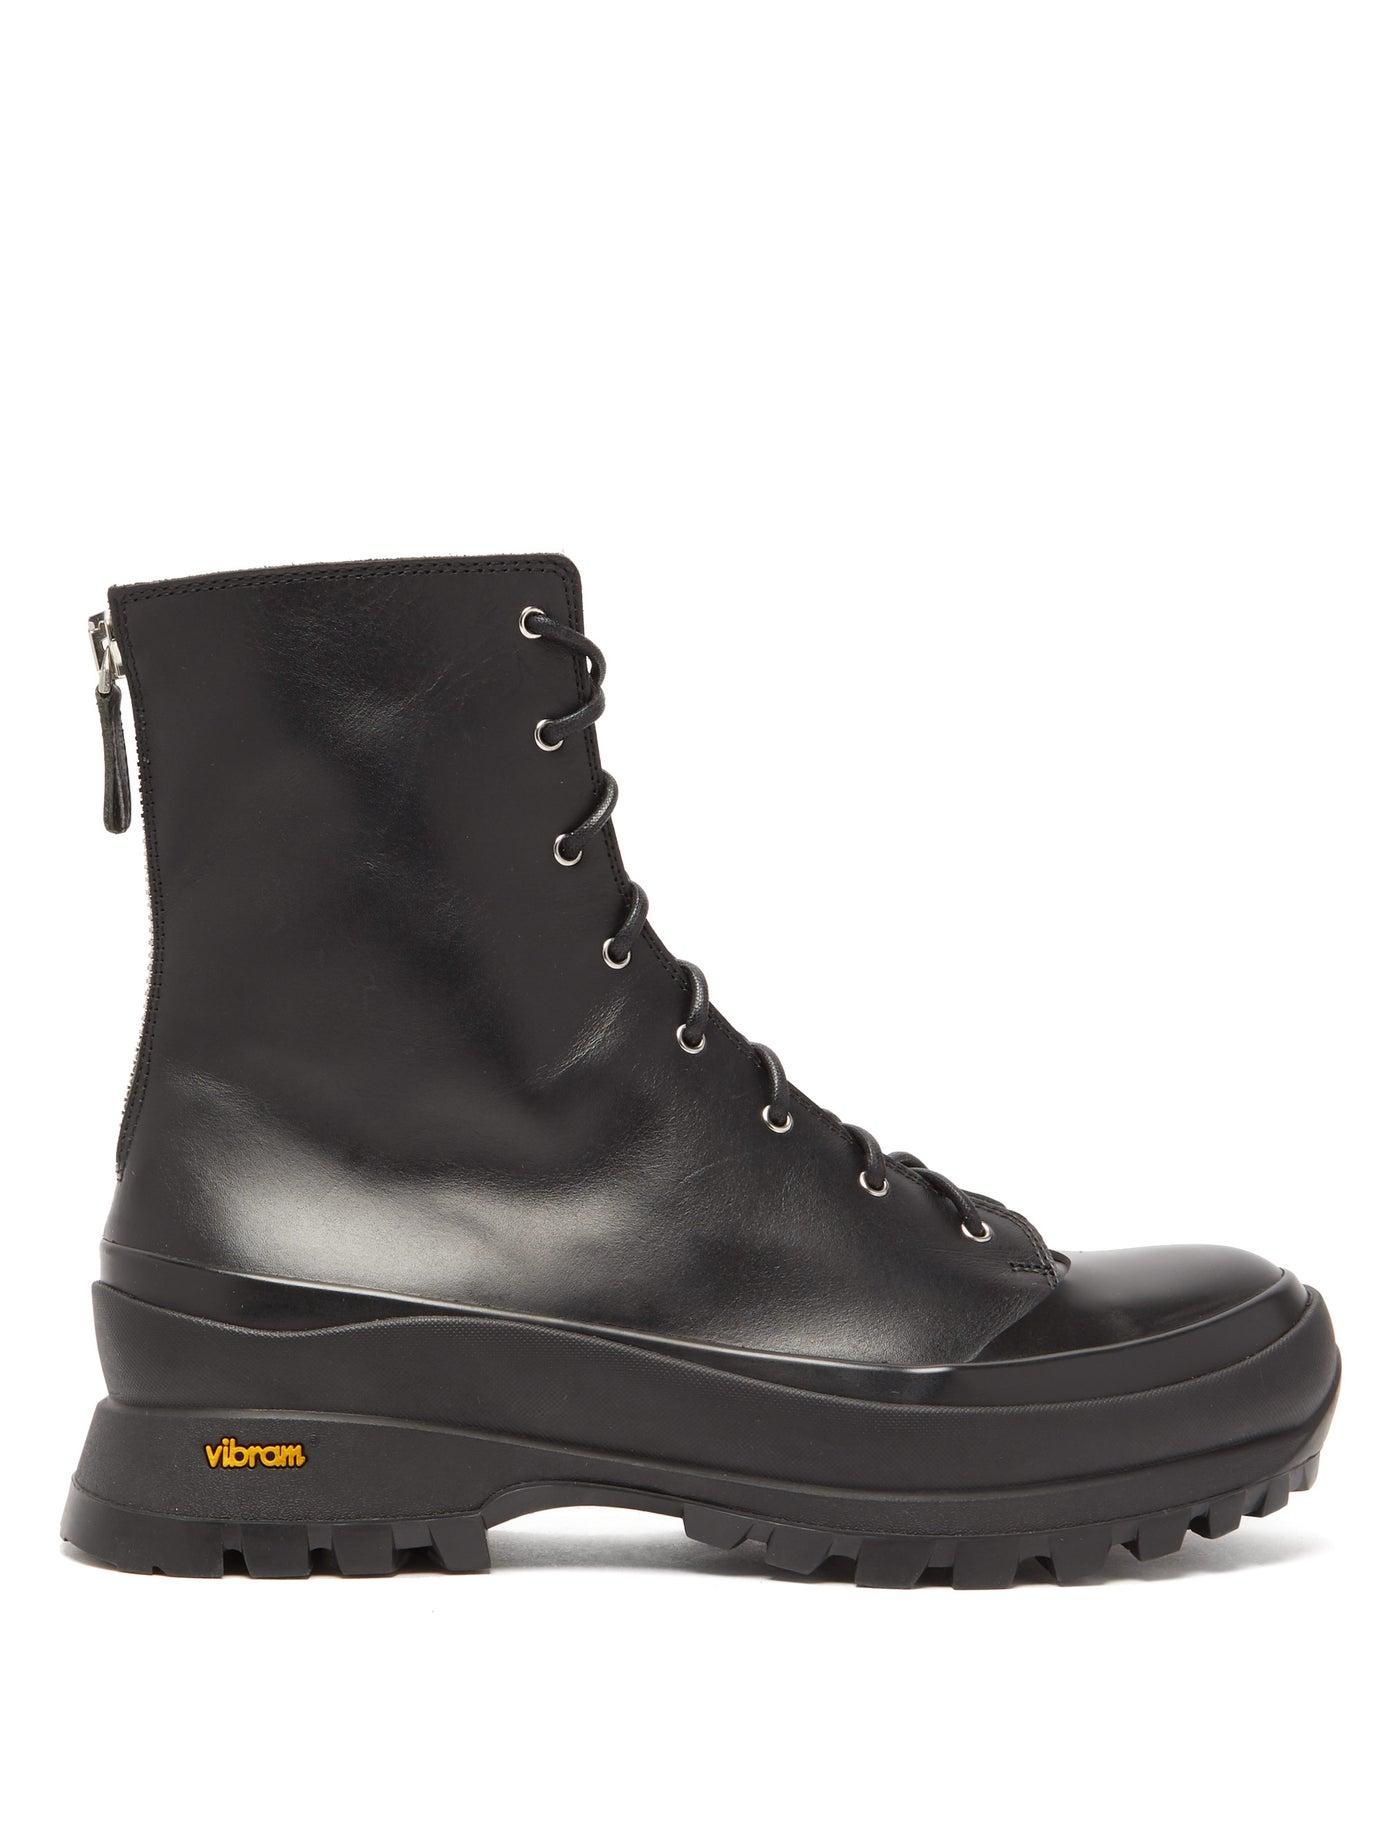 Jil Sander Trek-sole Leather Hiking Boots in Black - Lyst